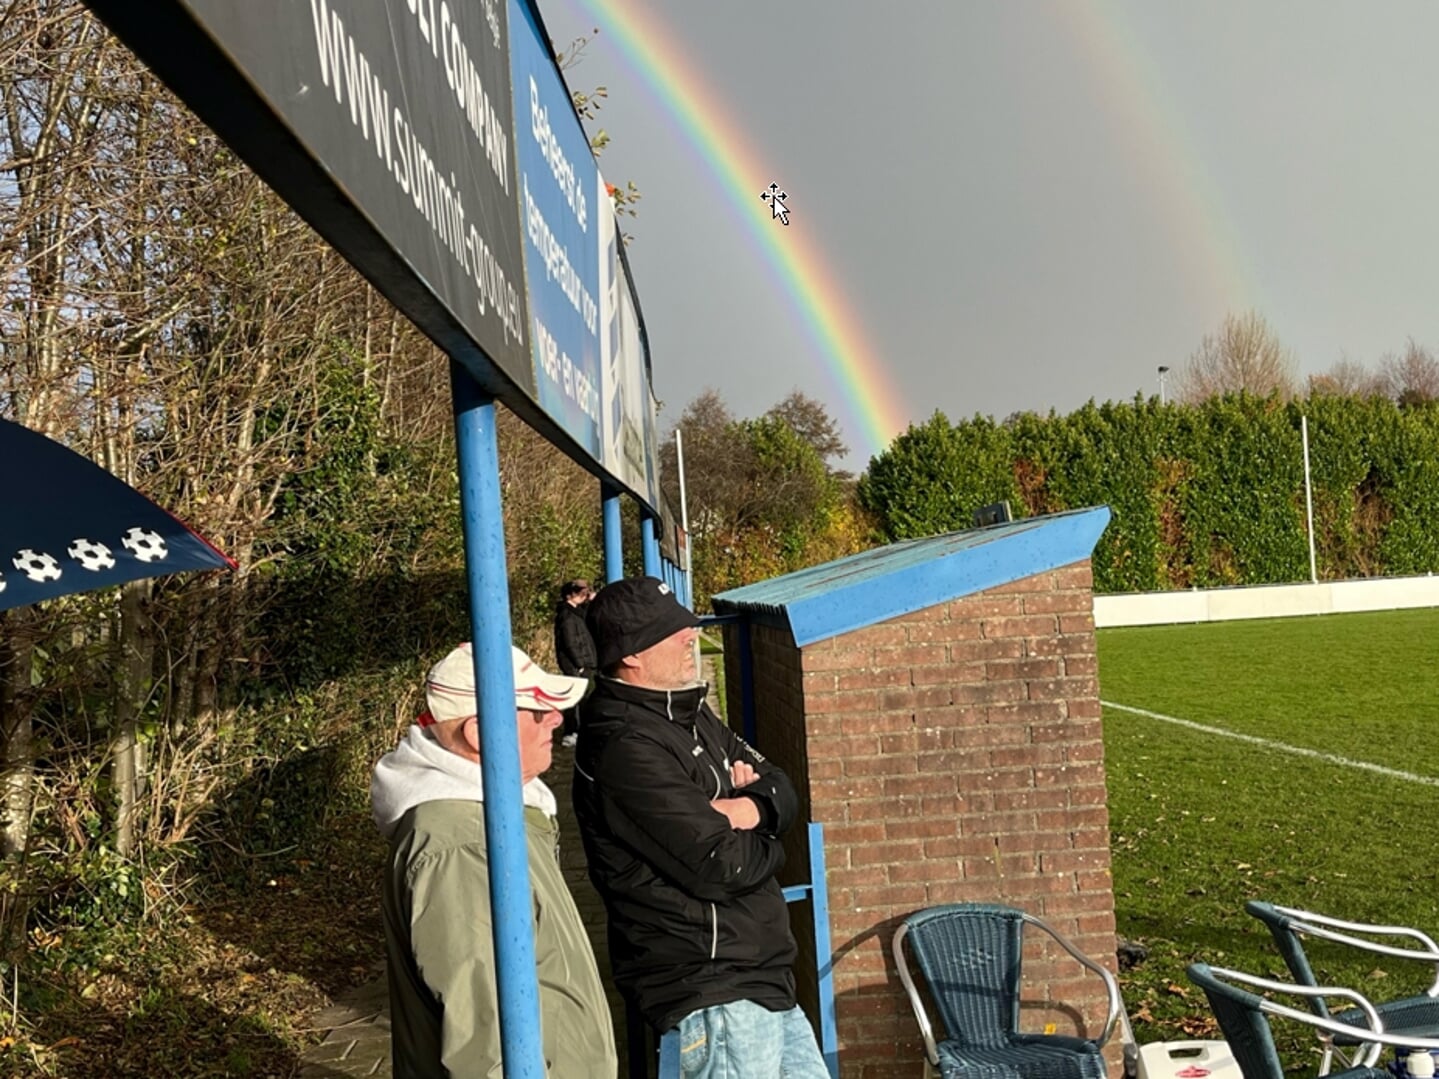 Onder het toeziend oog van Koos Schultz en eerste elftalleider Hans van Dam tekent zich een dubbele regenboog af aan het firmament. Het ultieme teken van vertrouwen en hoop kon de zebra’s niet helpen in de match tegen NBSVV, die met 4-0 verloren ging. 